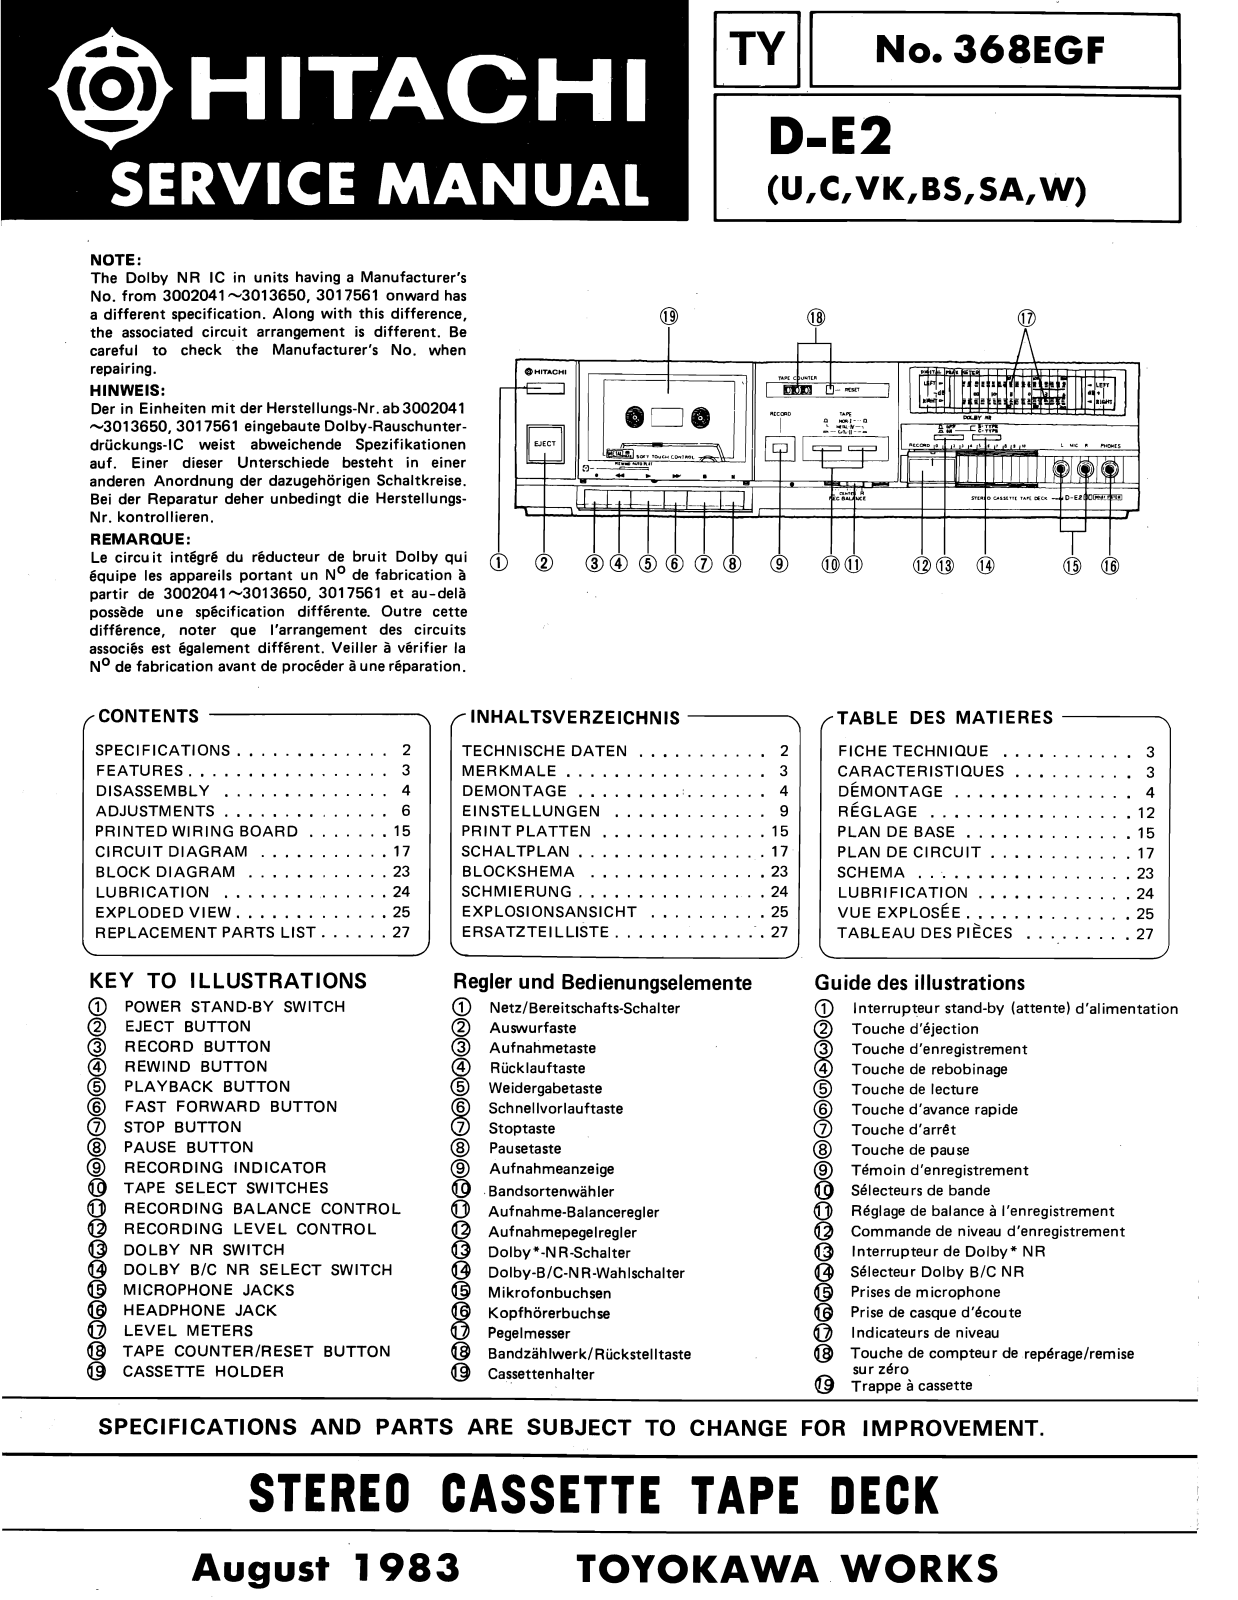 Hitachi DE-2 Service Manual